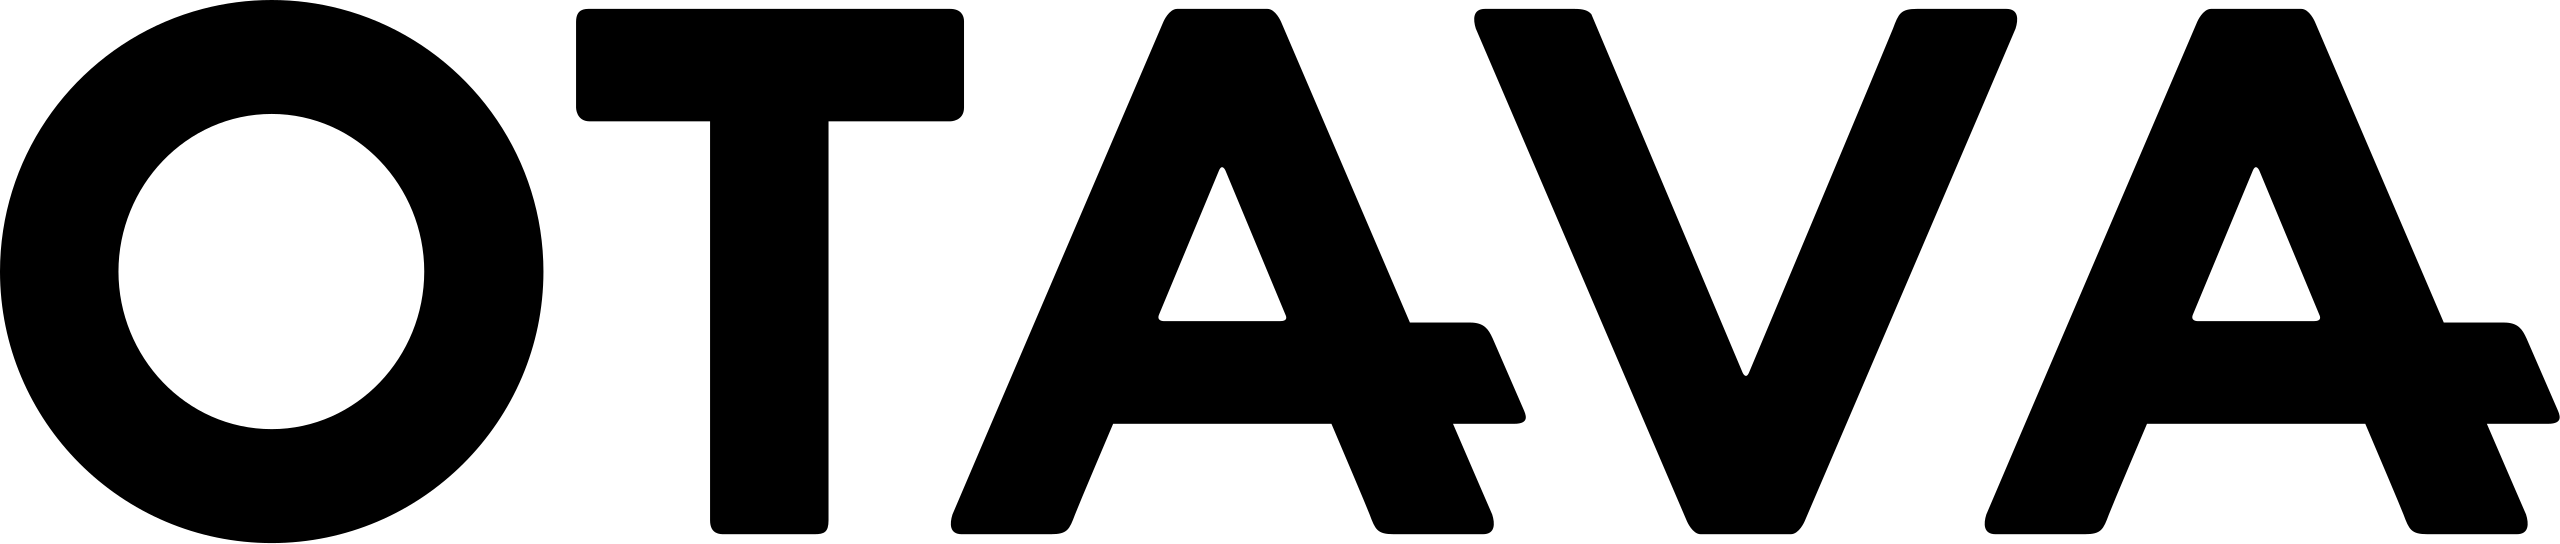 Otava logo.svg